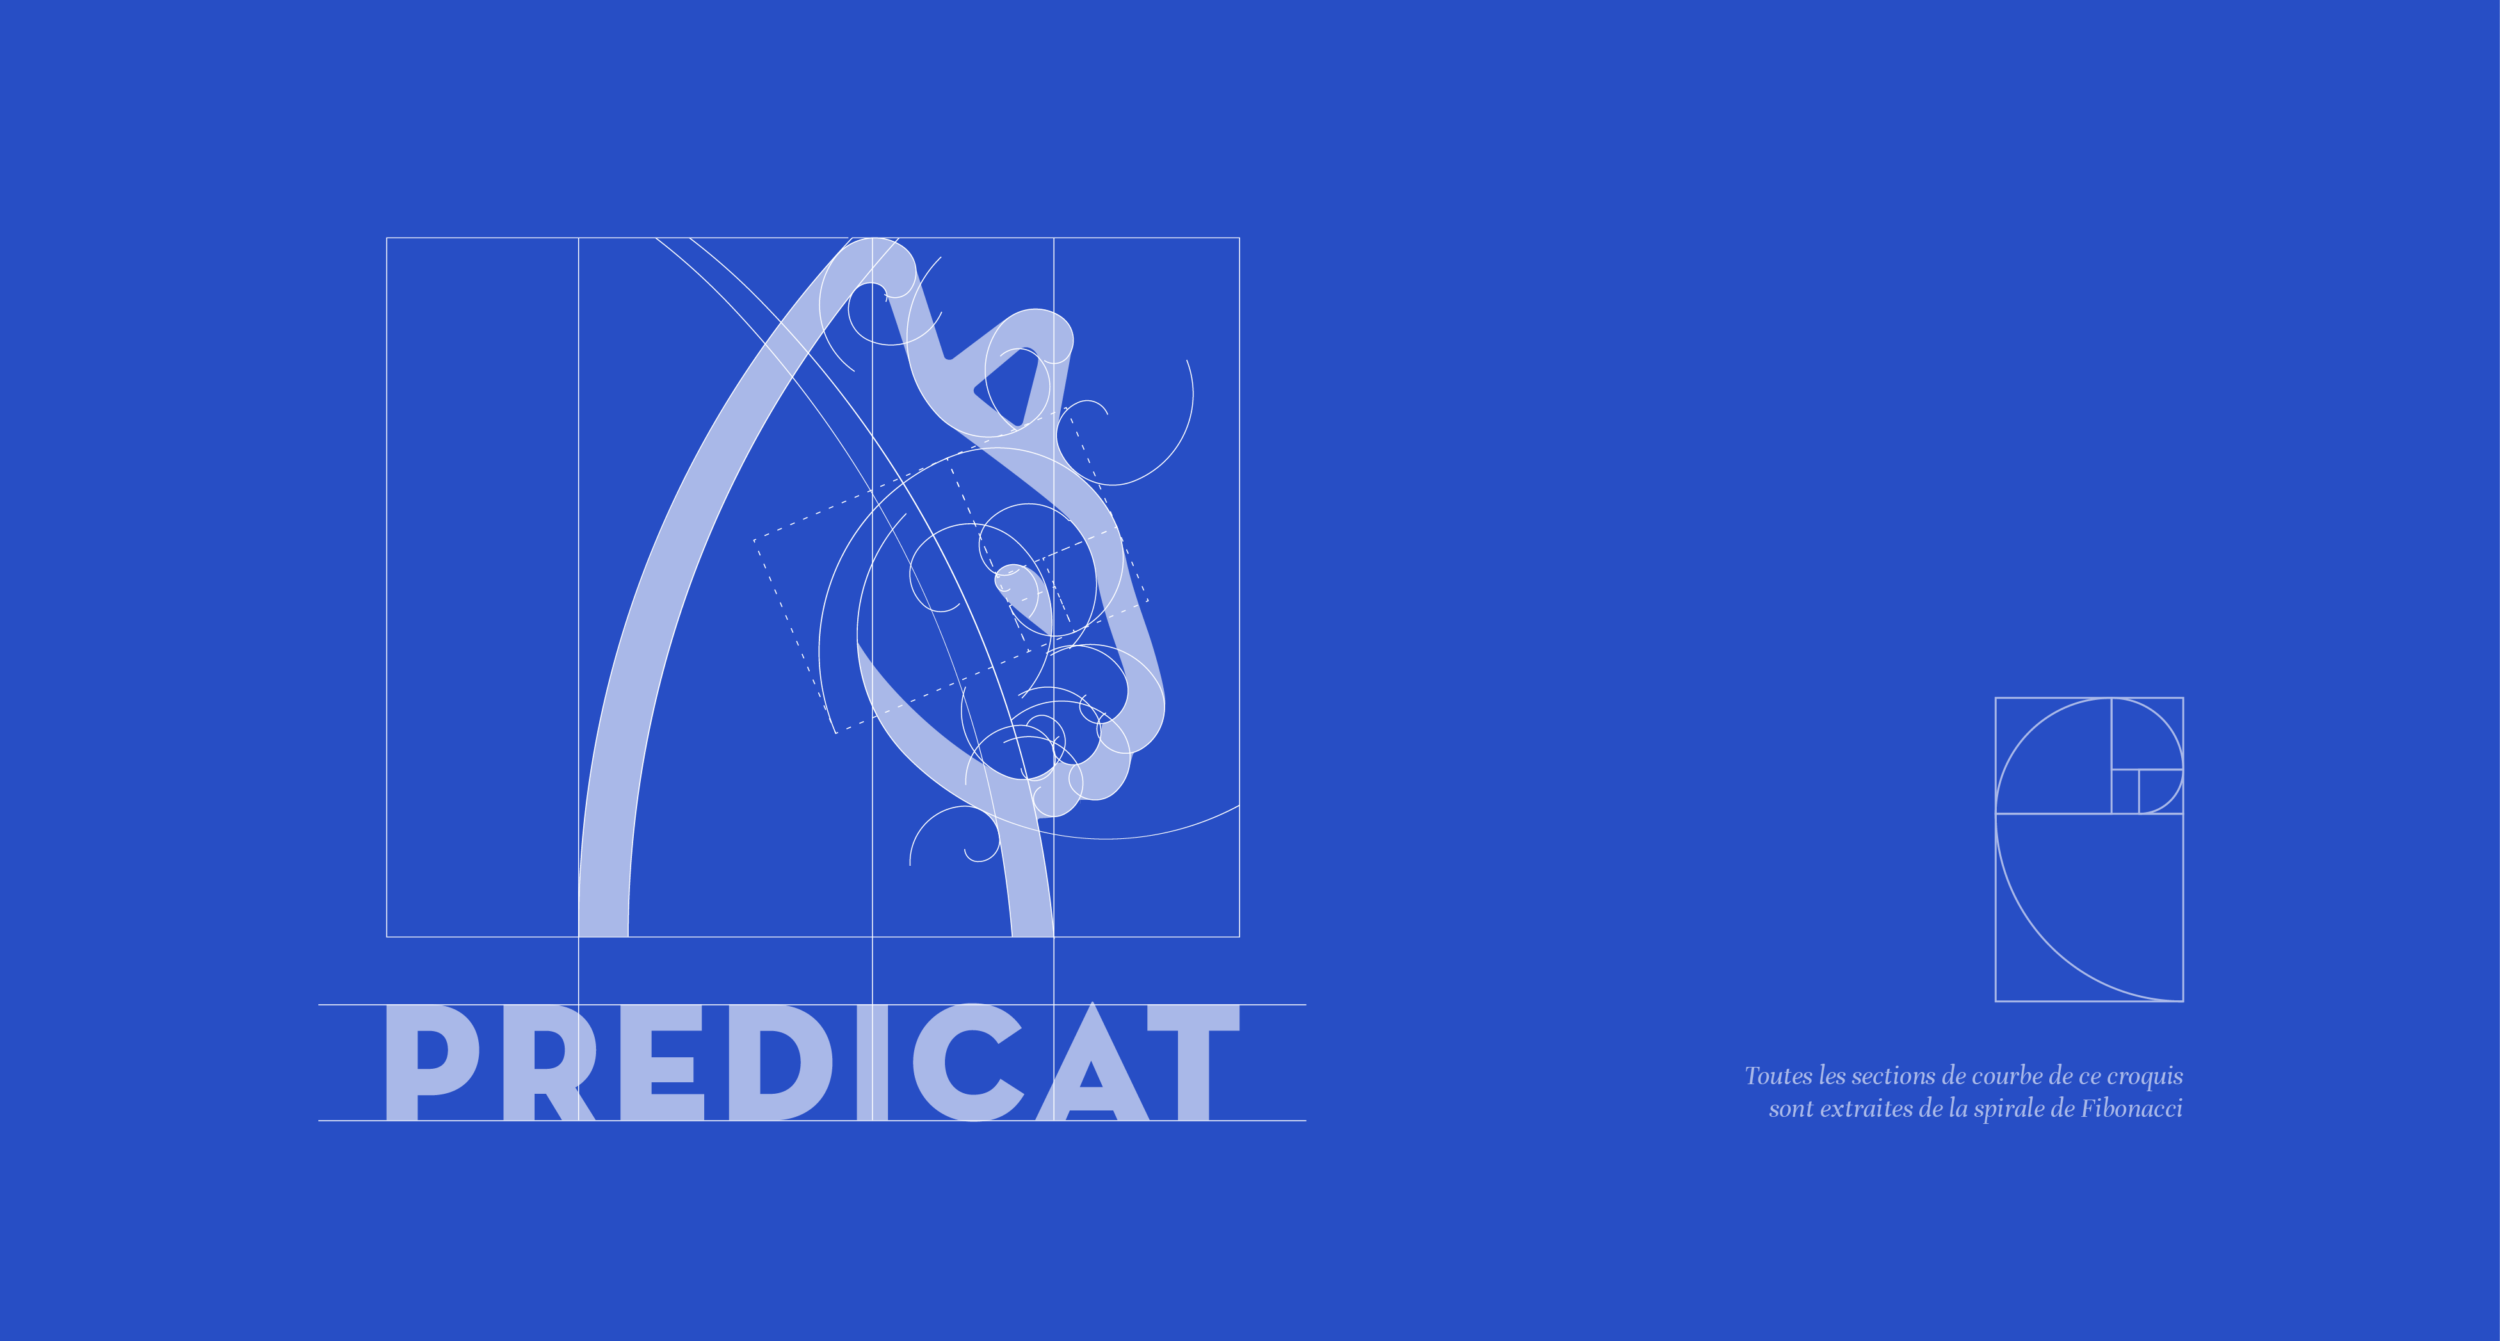 graphisme logo chat identite visuelle du logiciel predicat courbes spirale de fibonacci